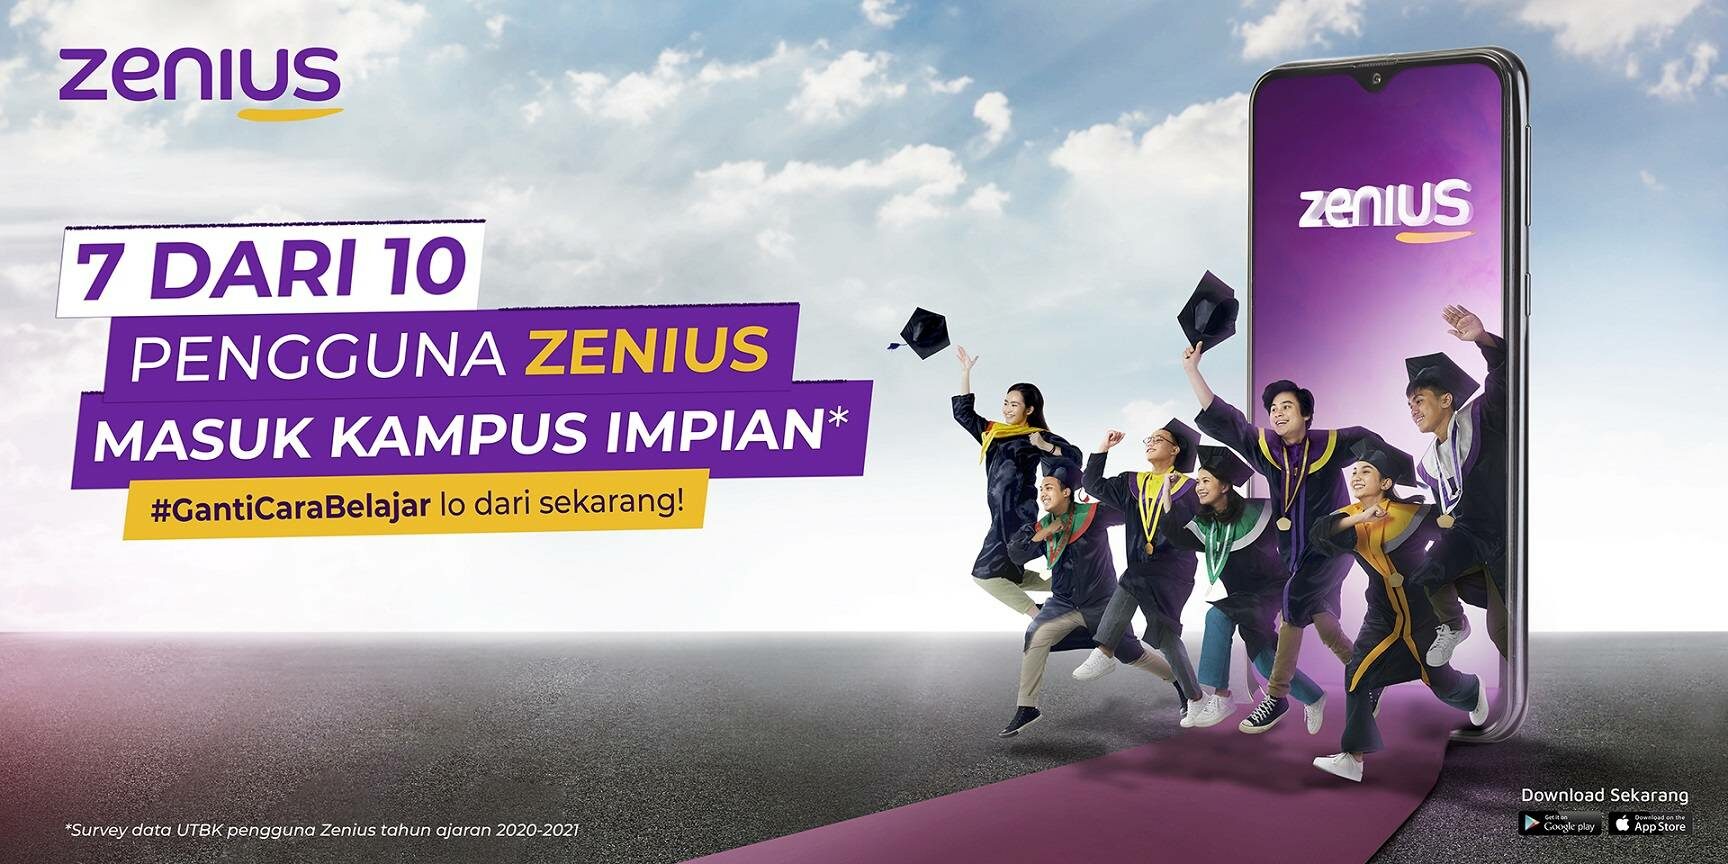 'เควิชั่น' ลงทุนใน 'ซีเนียส' สตาร์ตอัพการศึกษาชั้นนำในอินโดนีเซีย เจาะตลาดสินเชื่อเพื่อการศึกษา